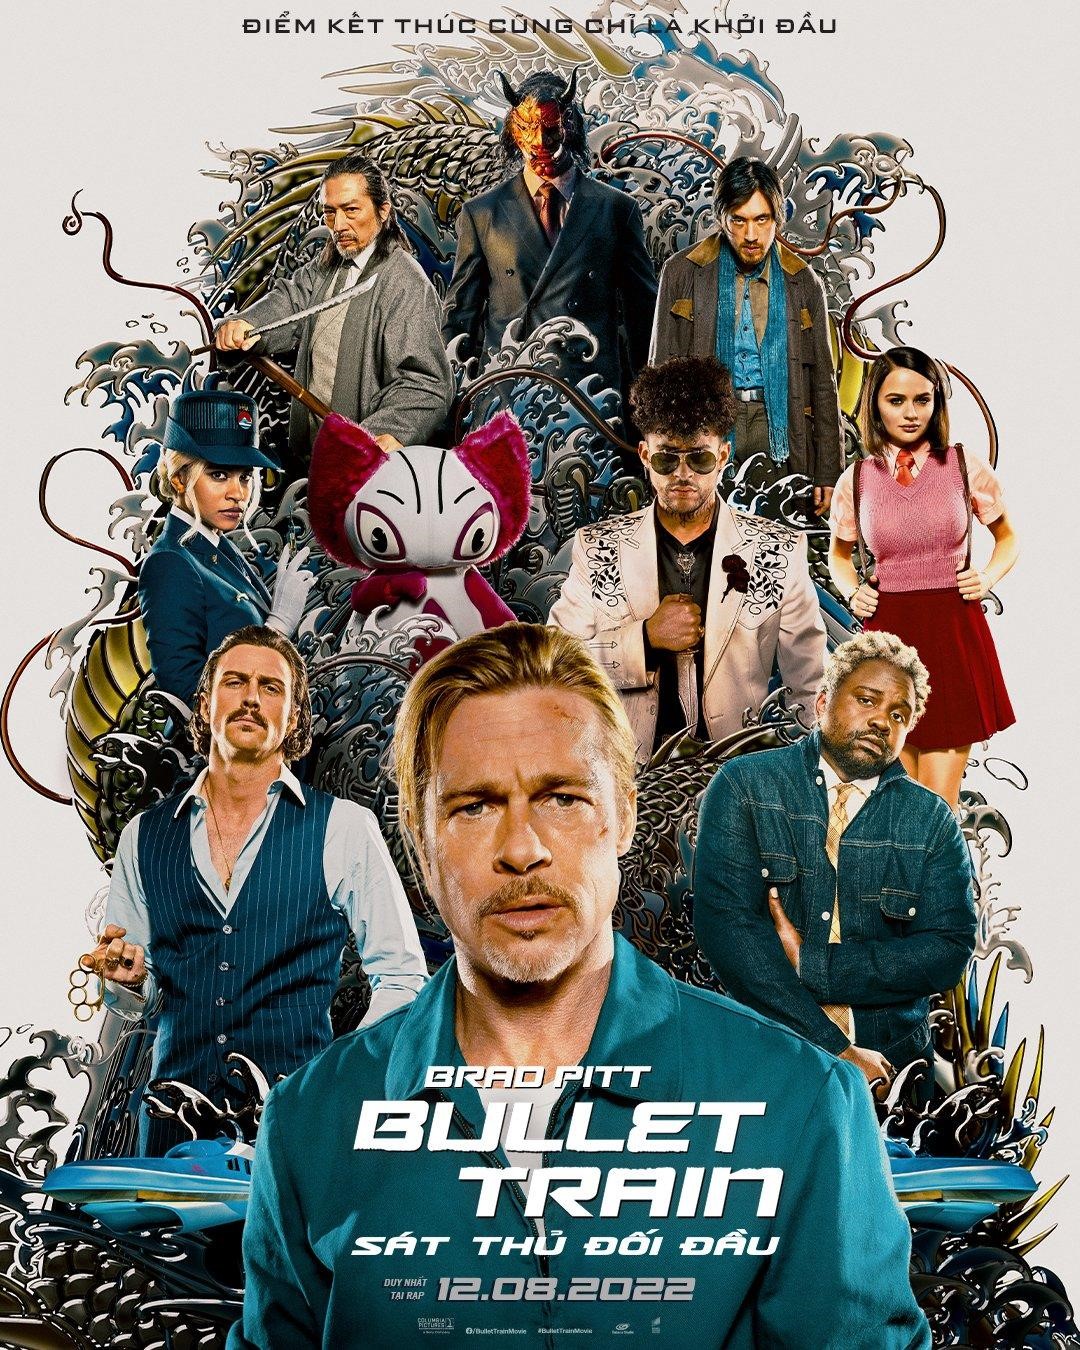 Phim “Bullet Train” chính thức khới chiếu từ 12.08.2022